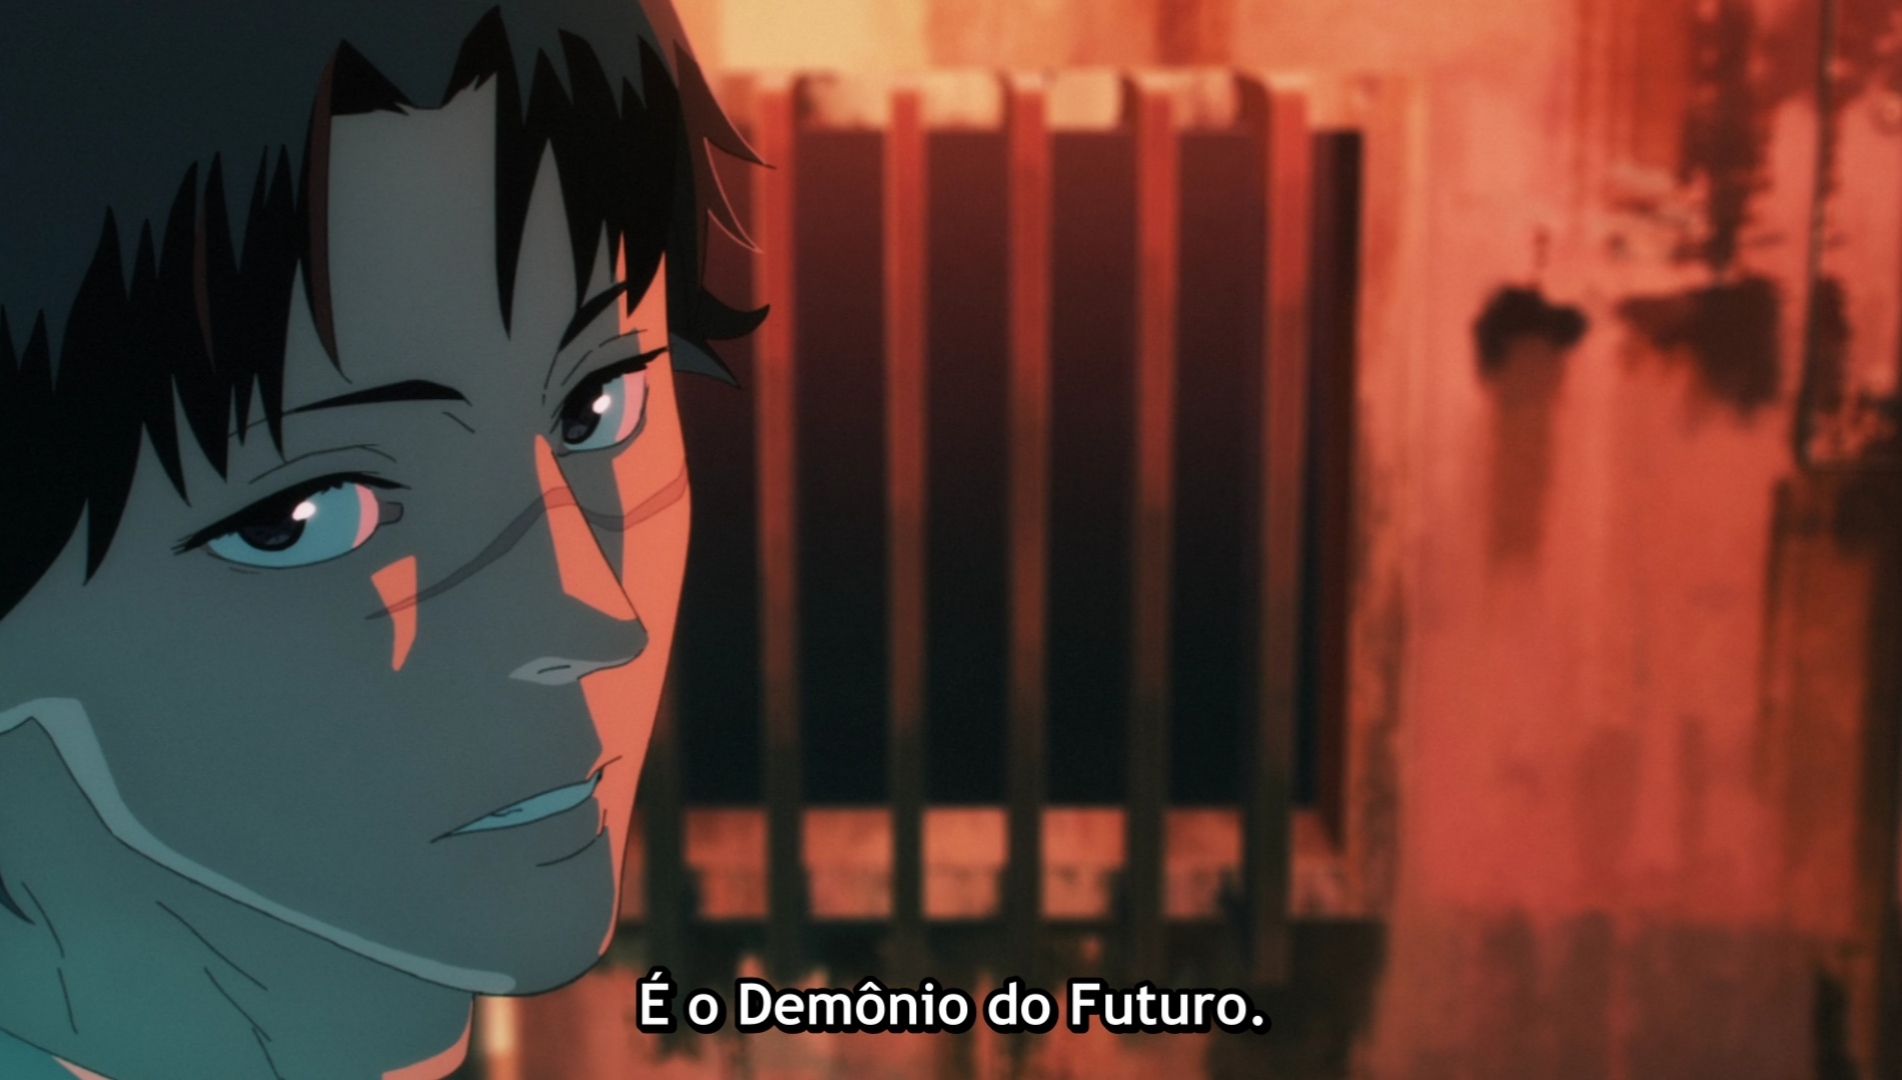 Otakus Brasil 🍥 on X: O futuro episódio de Chainsaw Man promete.   / X